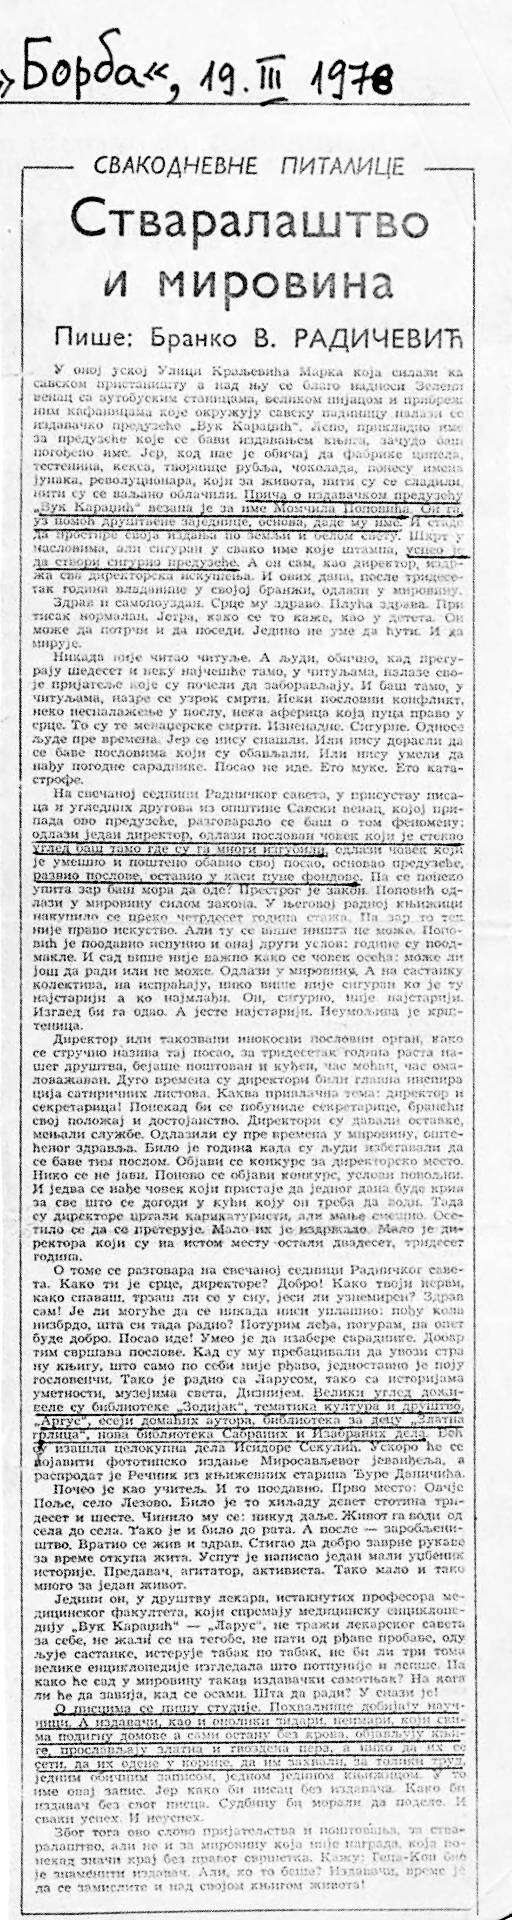 Stvaralaštvo i mirovina - O Momčilu Popoviću autor Branko V. Radičević - Borba, 19. mart 1978. godine